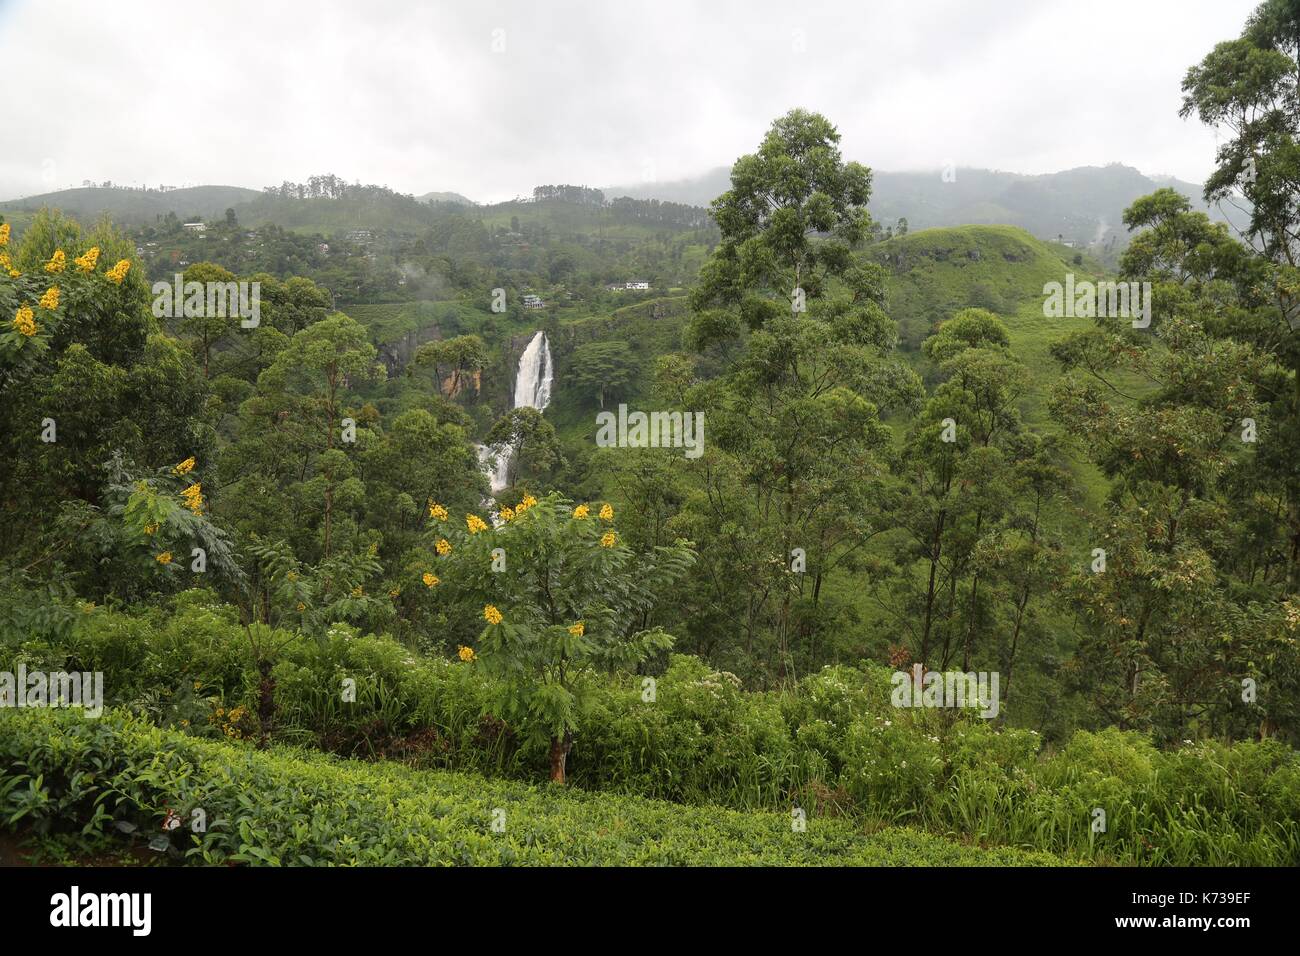 Plantas de té crece sobre una ladera escarpada, cascada, Sir Lanka, Nuwara Eliya, plantación de té Foto de stock